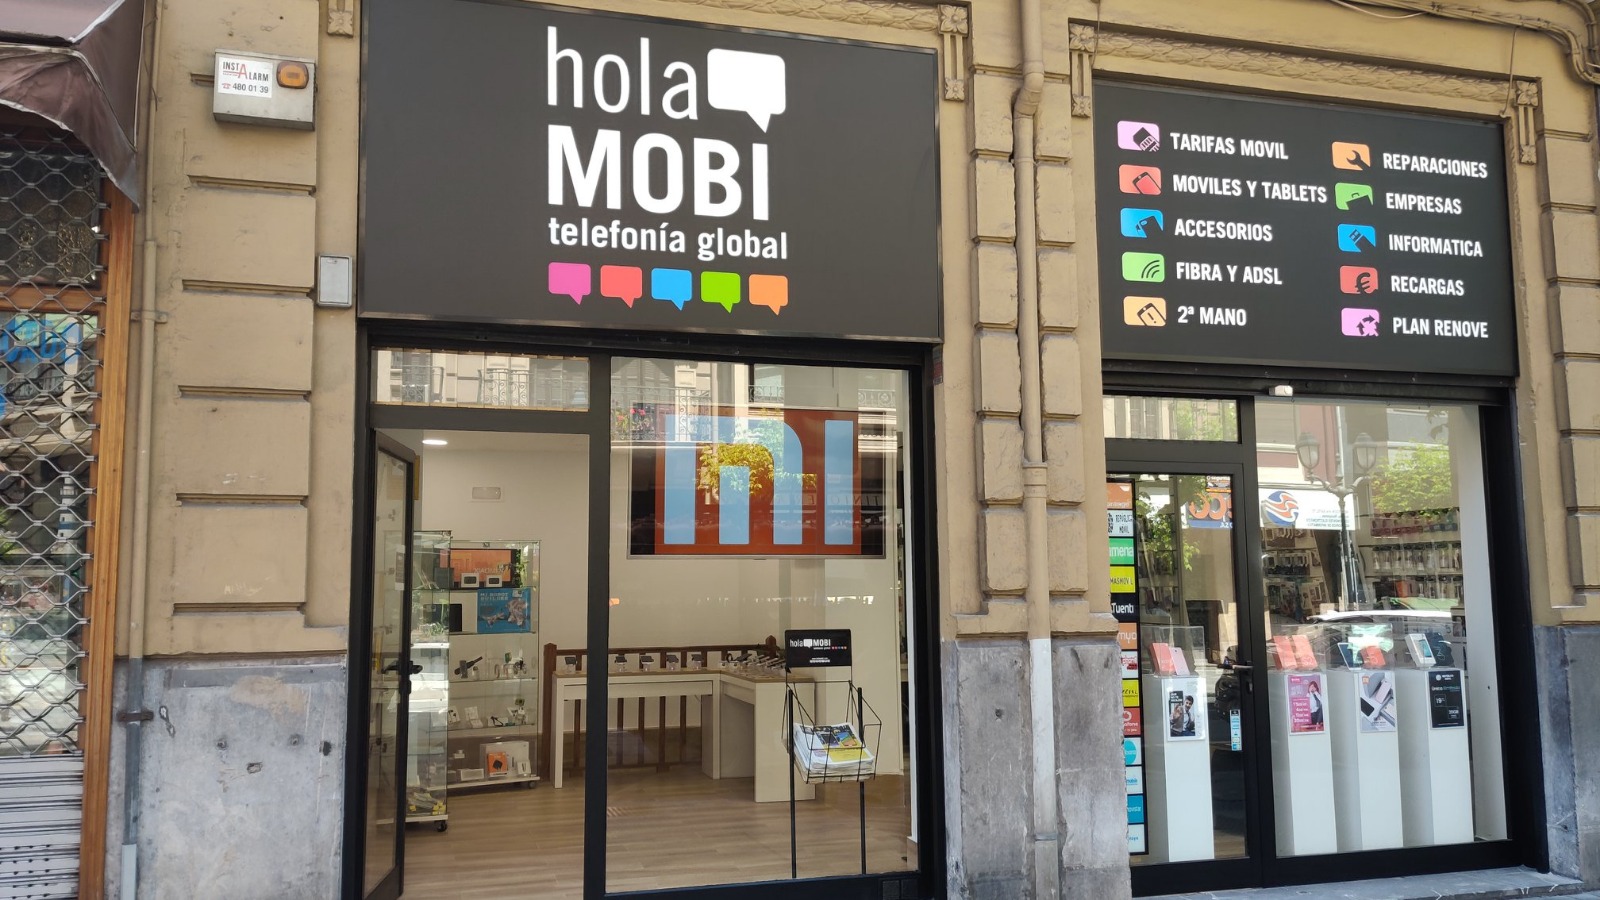 holaMOBI telefonía global inaugura nuevas tiendas en centros comerciales